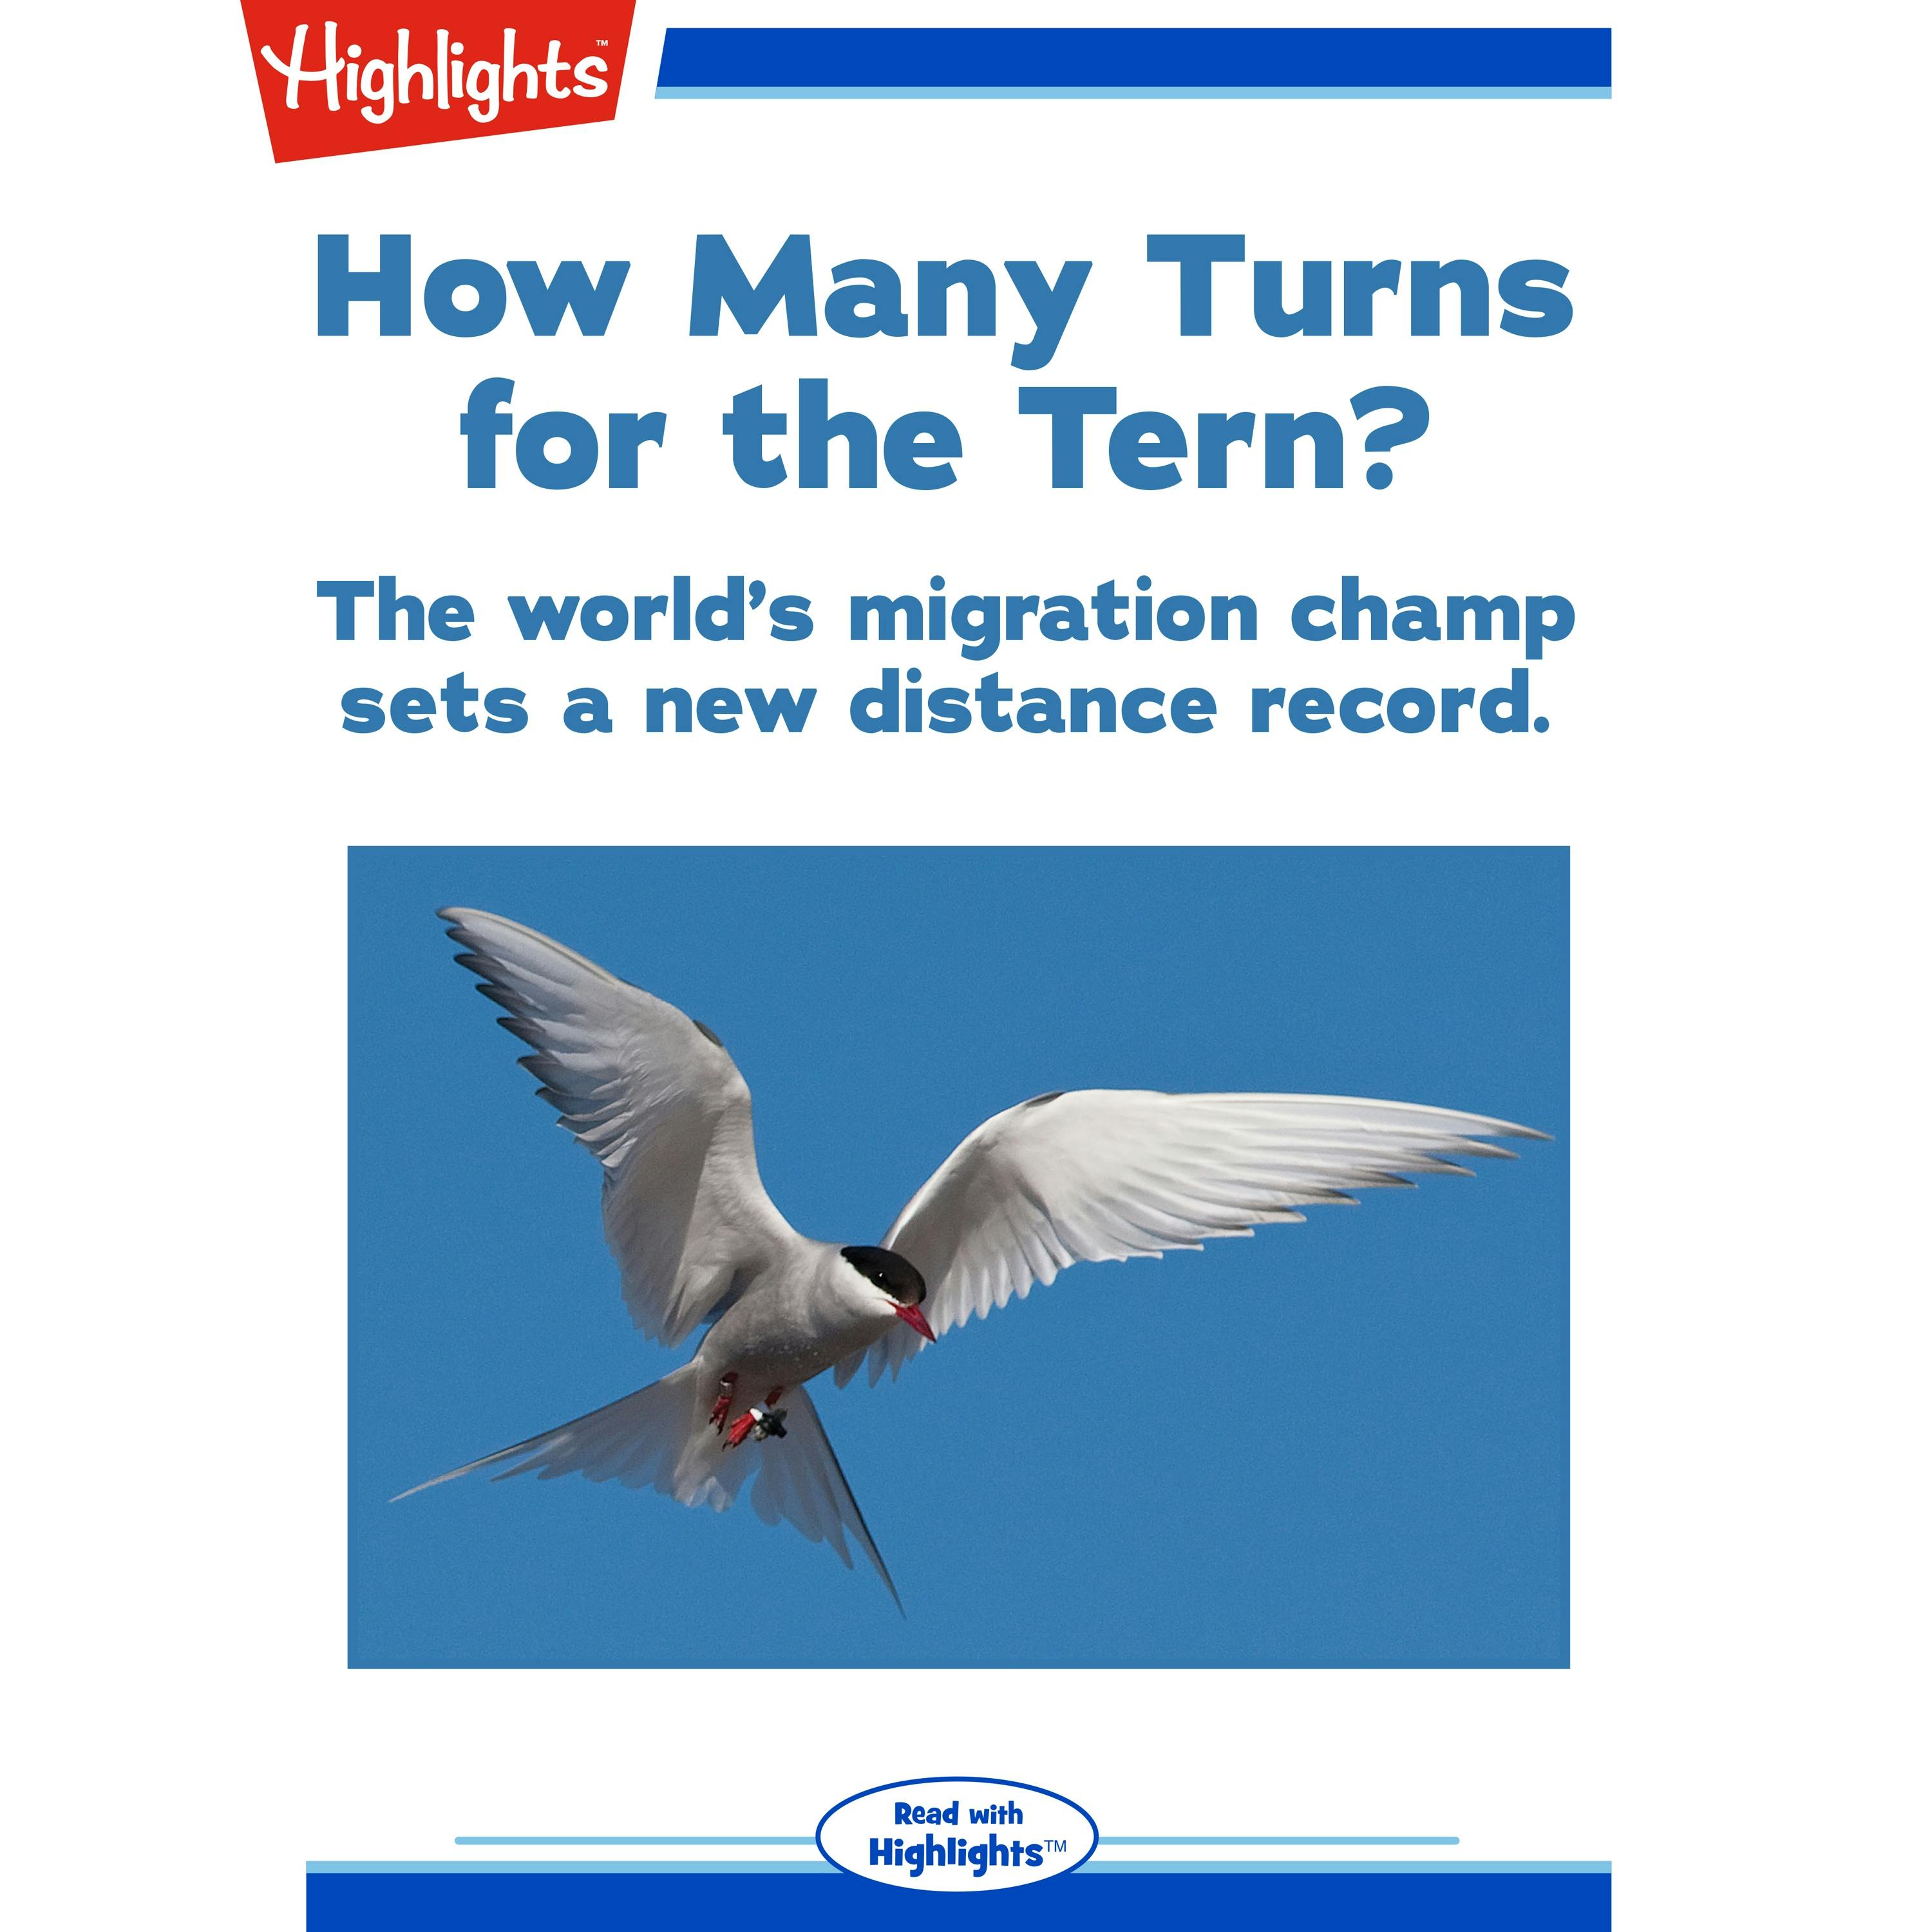 How Many Turns for the Tern? - Alison Pearce Stevens, Ph.D.